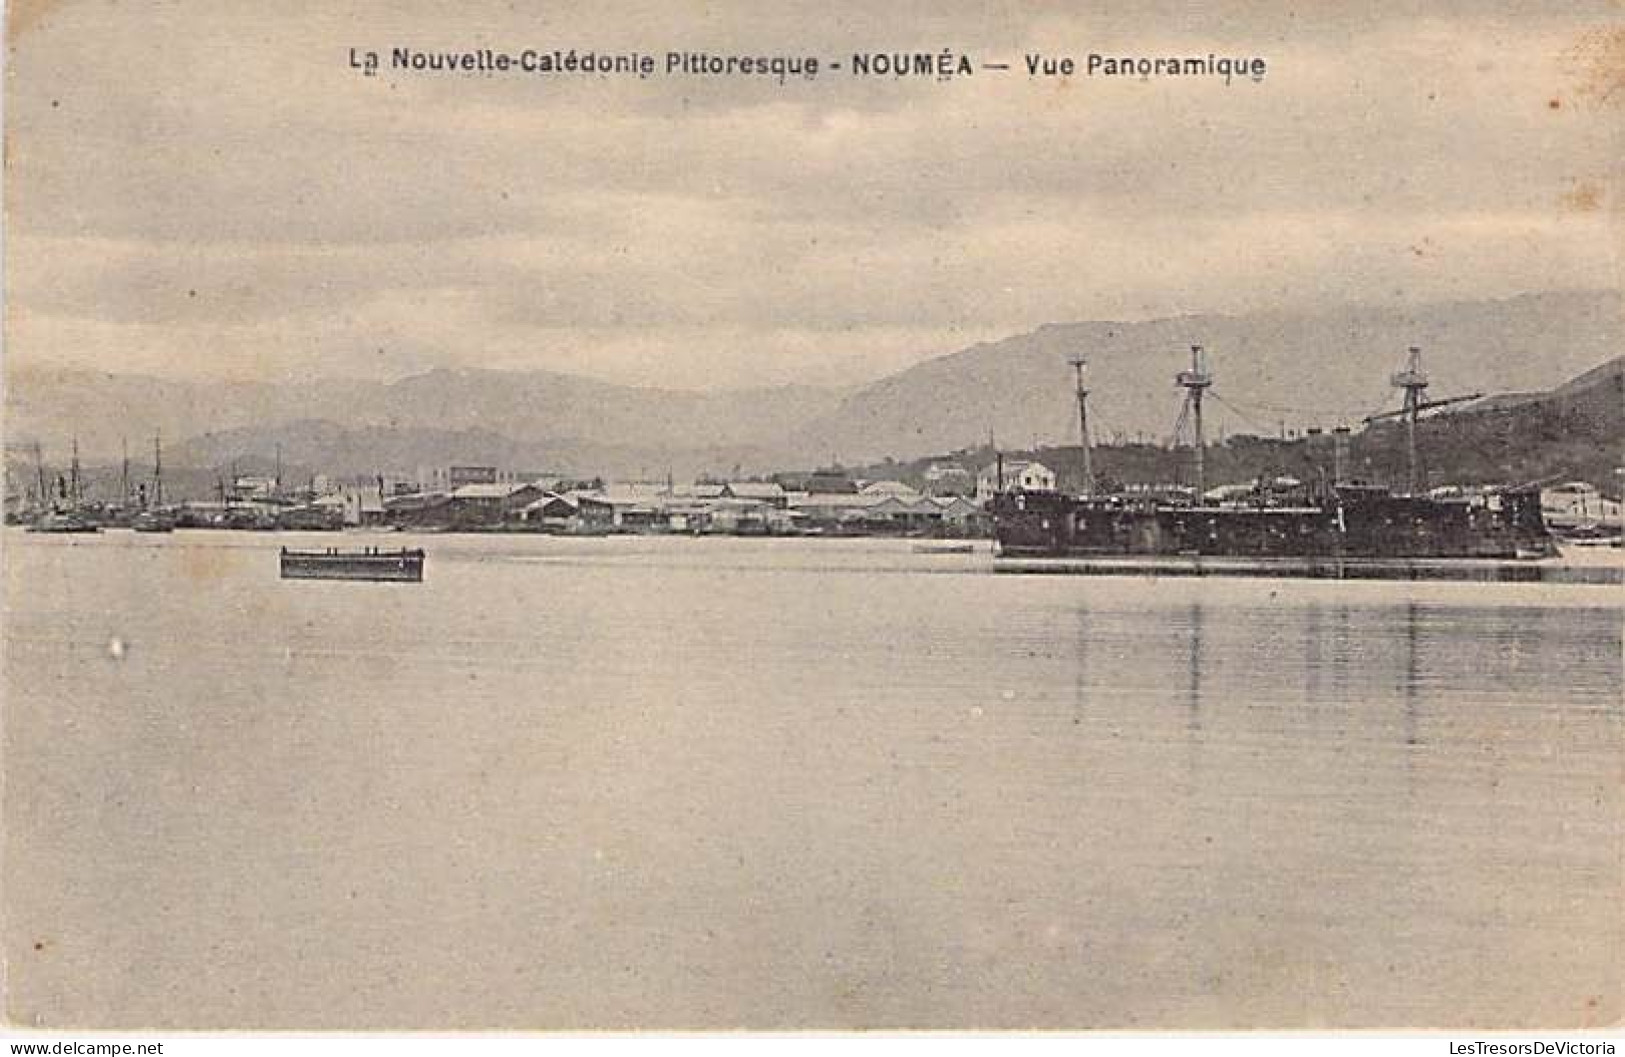 Nouvelle Calédonie Pittoresque - Nouméa - Vue Panoramique - Bateau - Béchade - Carte Postale Ancienne - Nouvelle-Calédonie